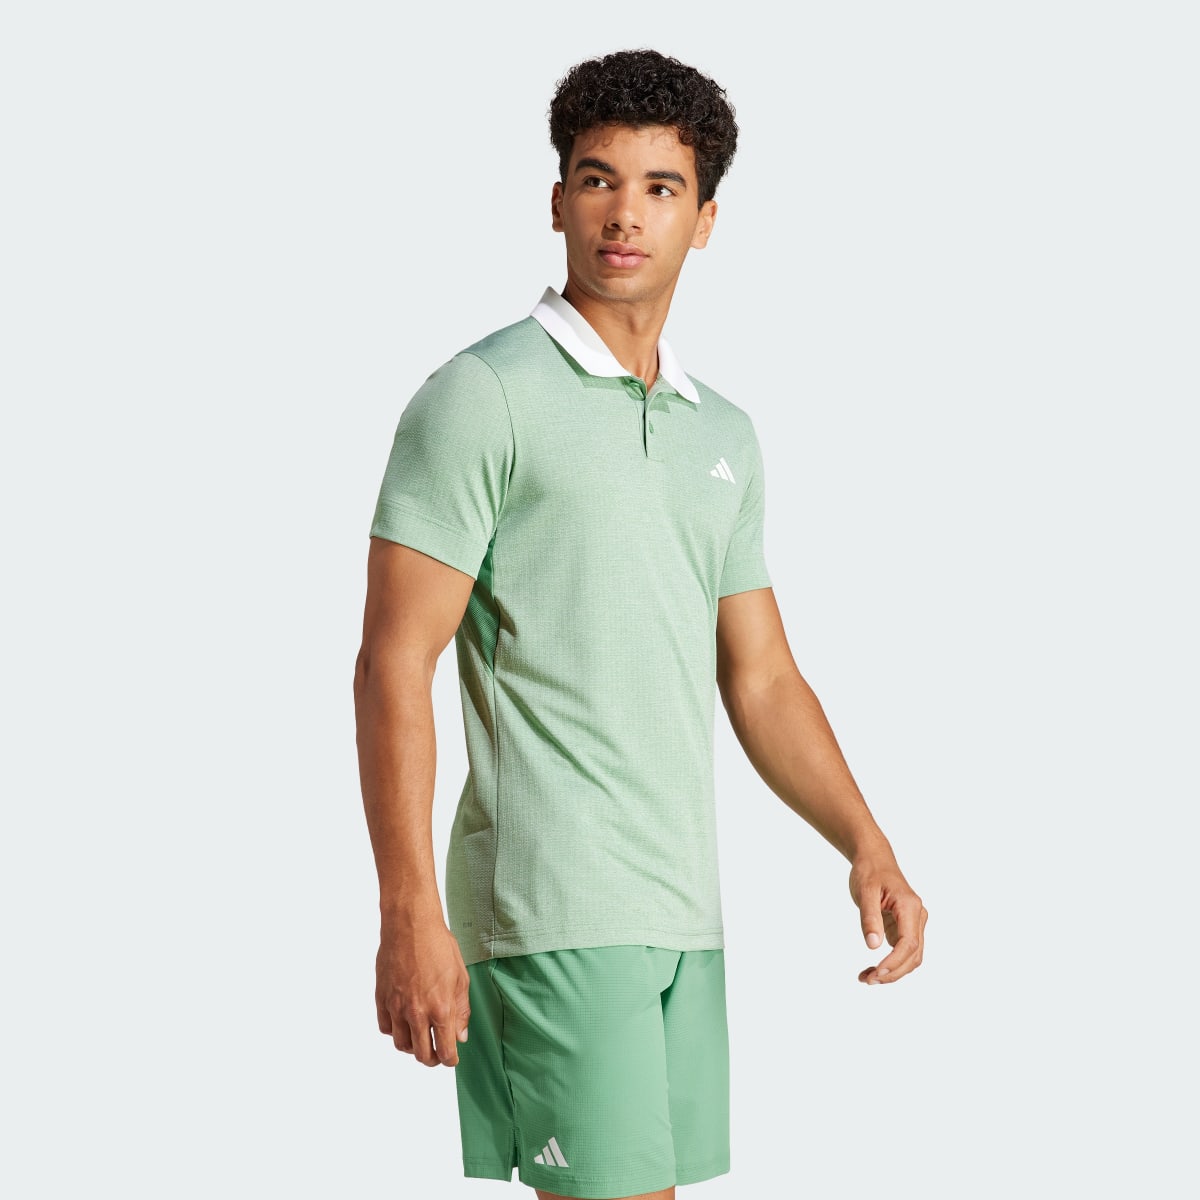 Adidas Koszulka Tennis FreeLift Polo. 4